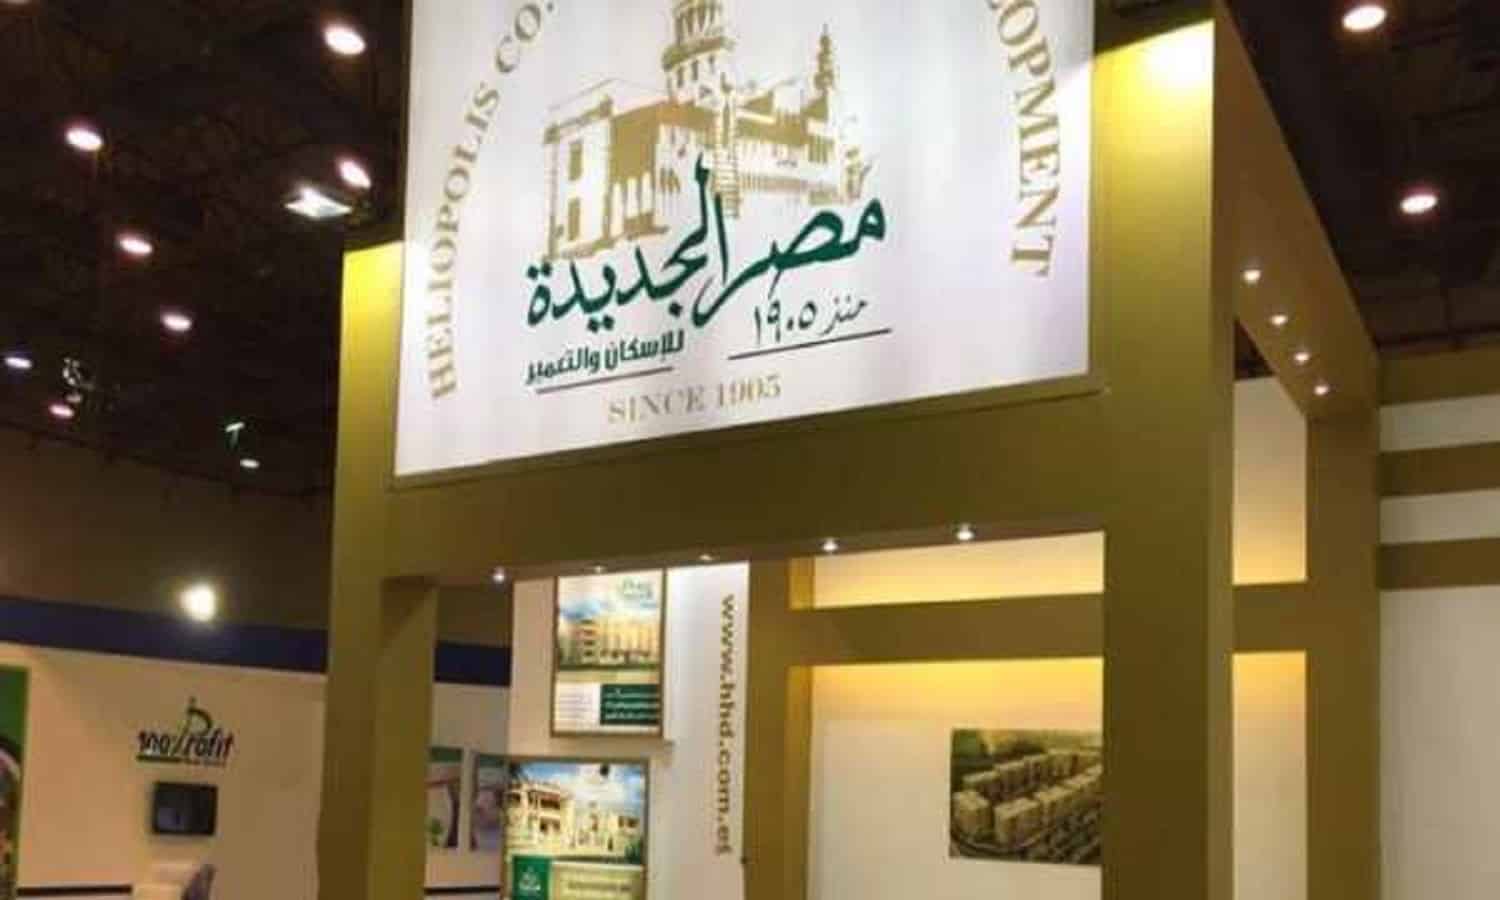 مصر الجديدة للإسكان تُقر بيع أرض هليوبارك لـ القومية للتأمين الاجتماعي
